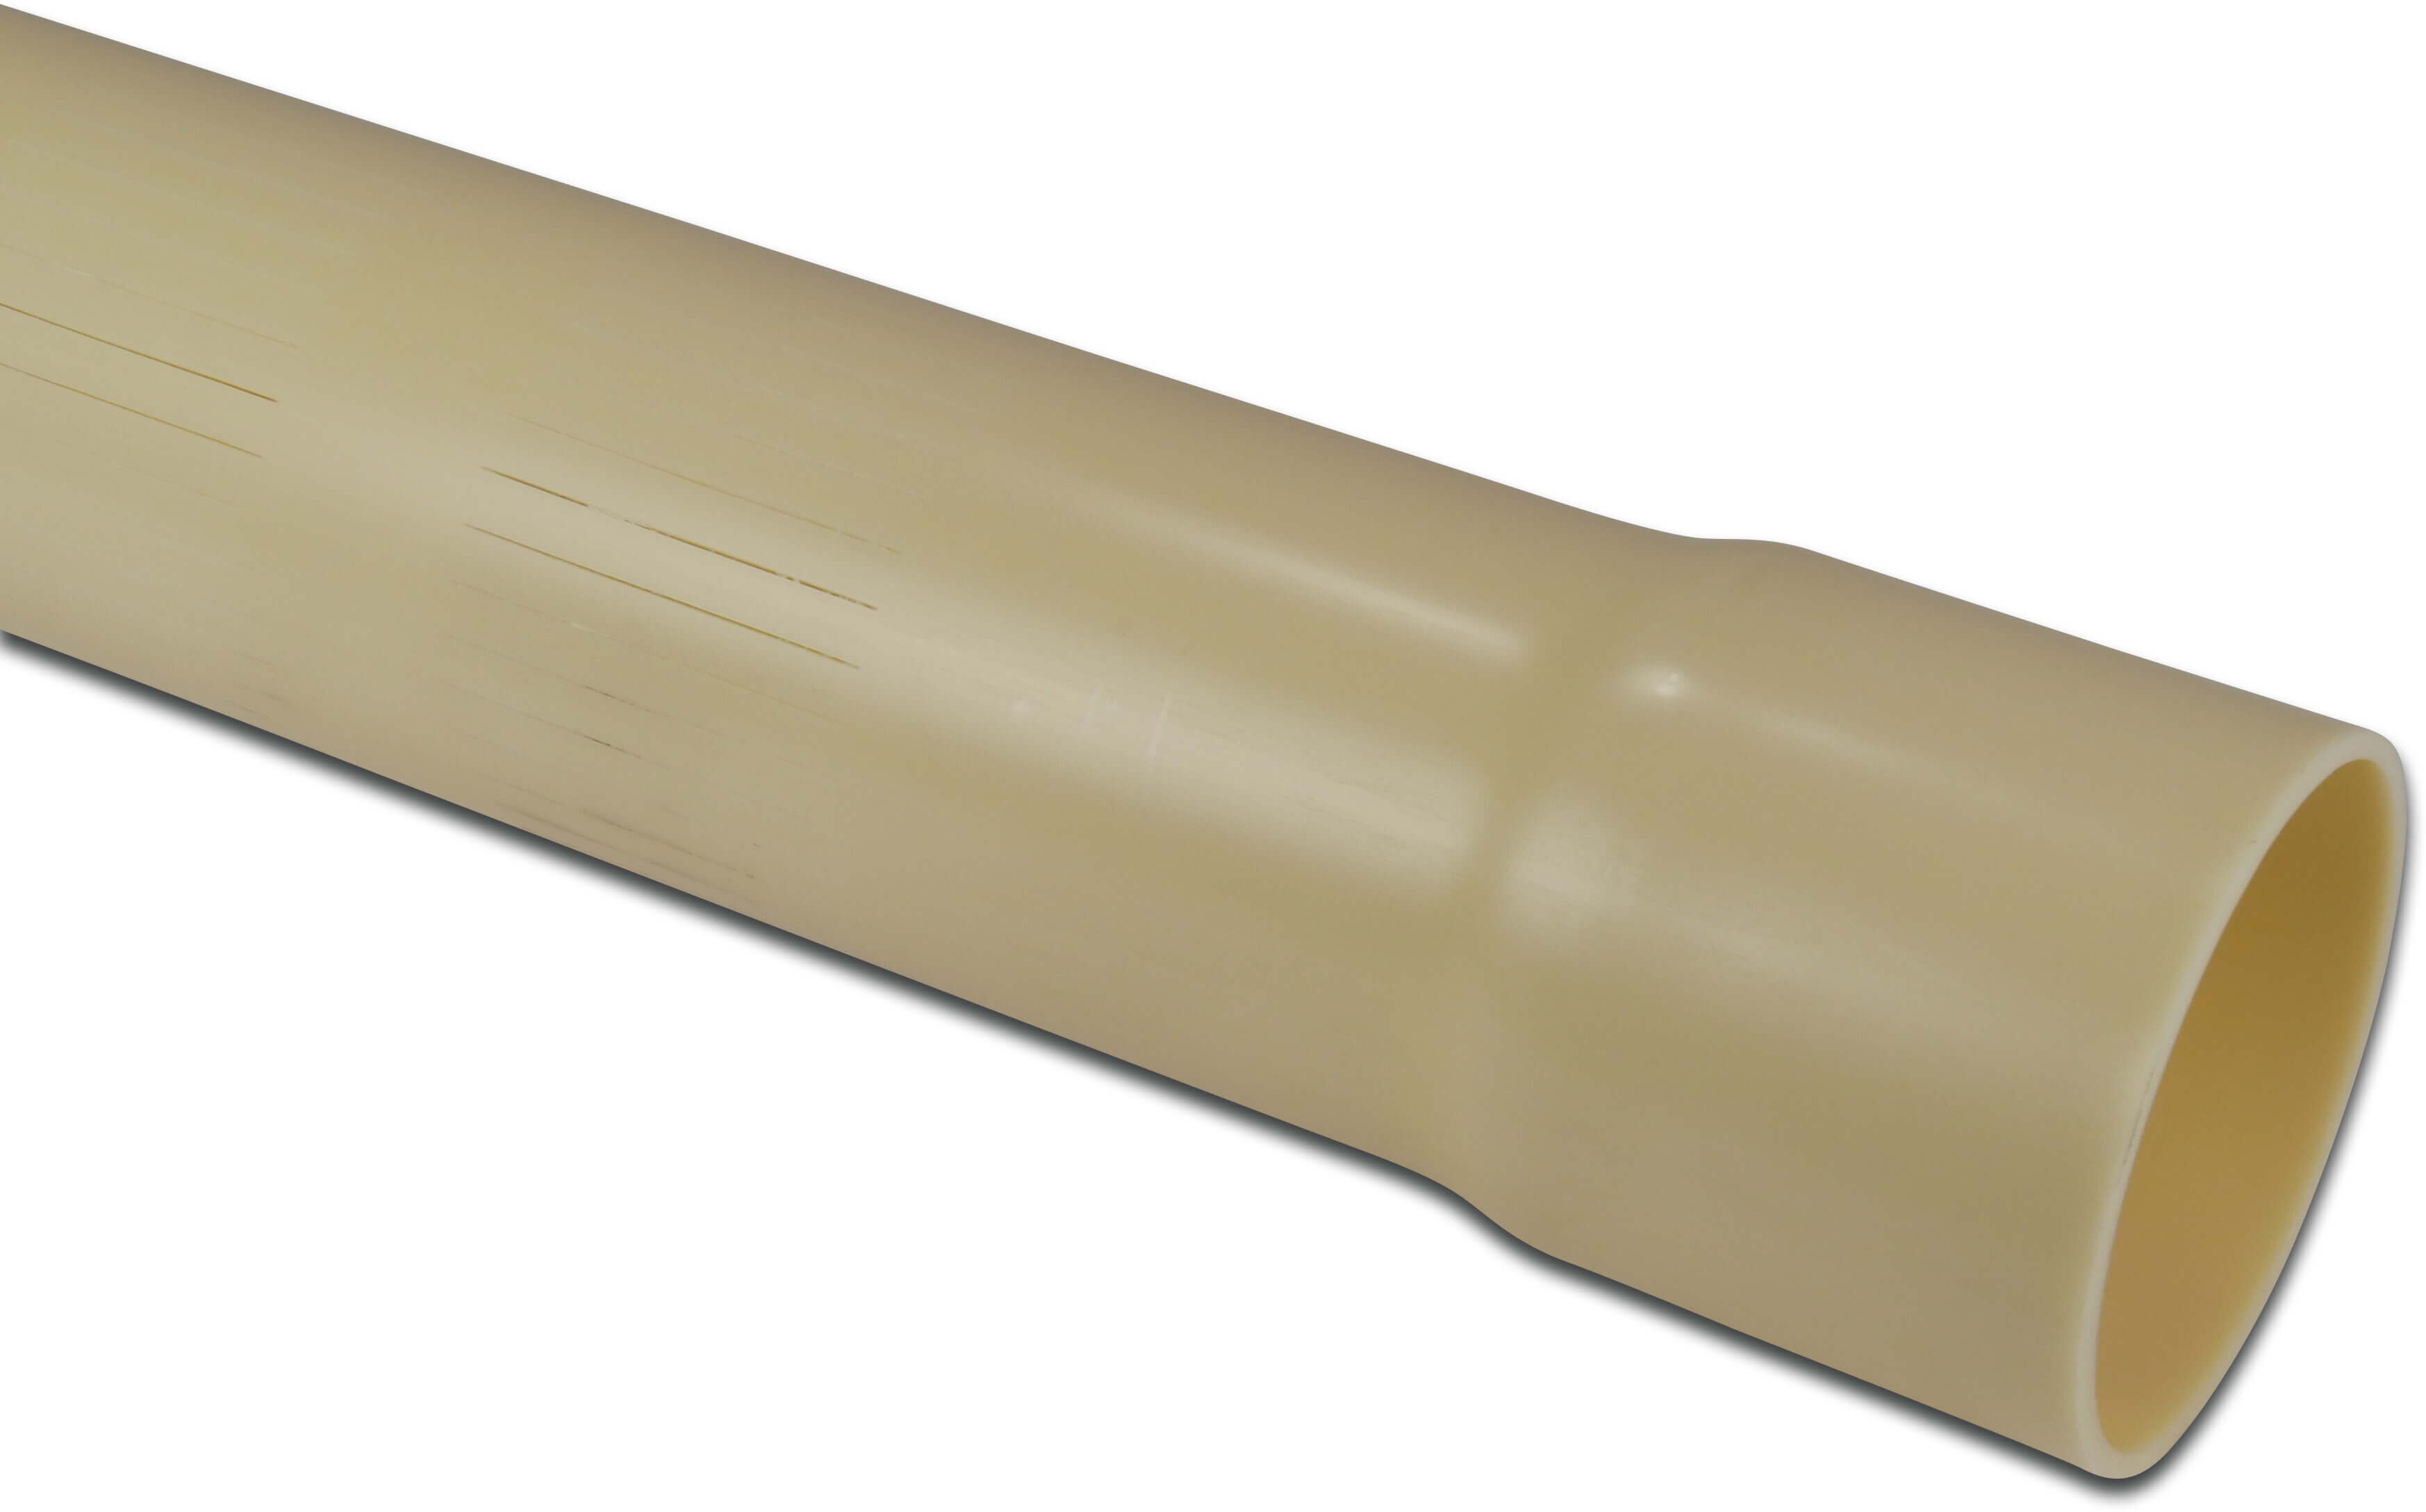 Crépine PVC-U 63 mm x 2,5 mm collage femelle x lisse 2m 0,3 mm ISO-PN8 crème 5m